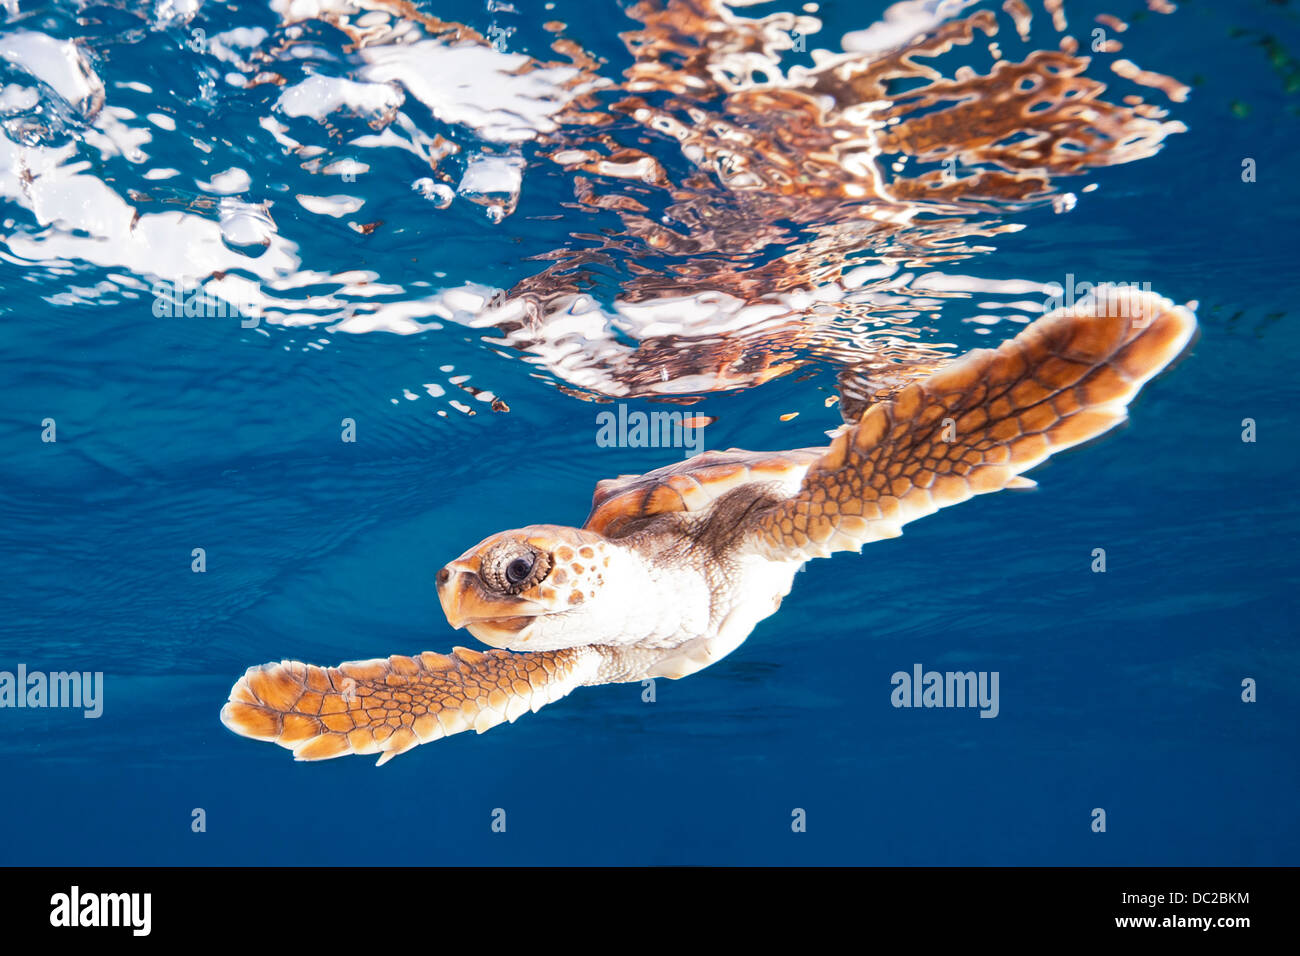 La tortue caouanne, Caretta caretta, la mer des Caraïbes, Bahamas Banque D'Images